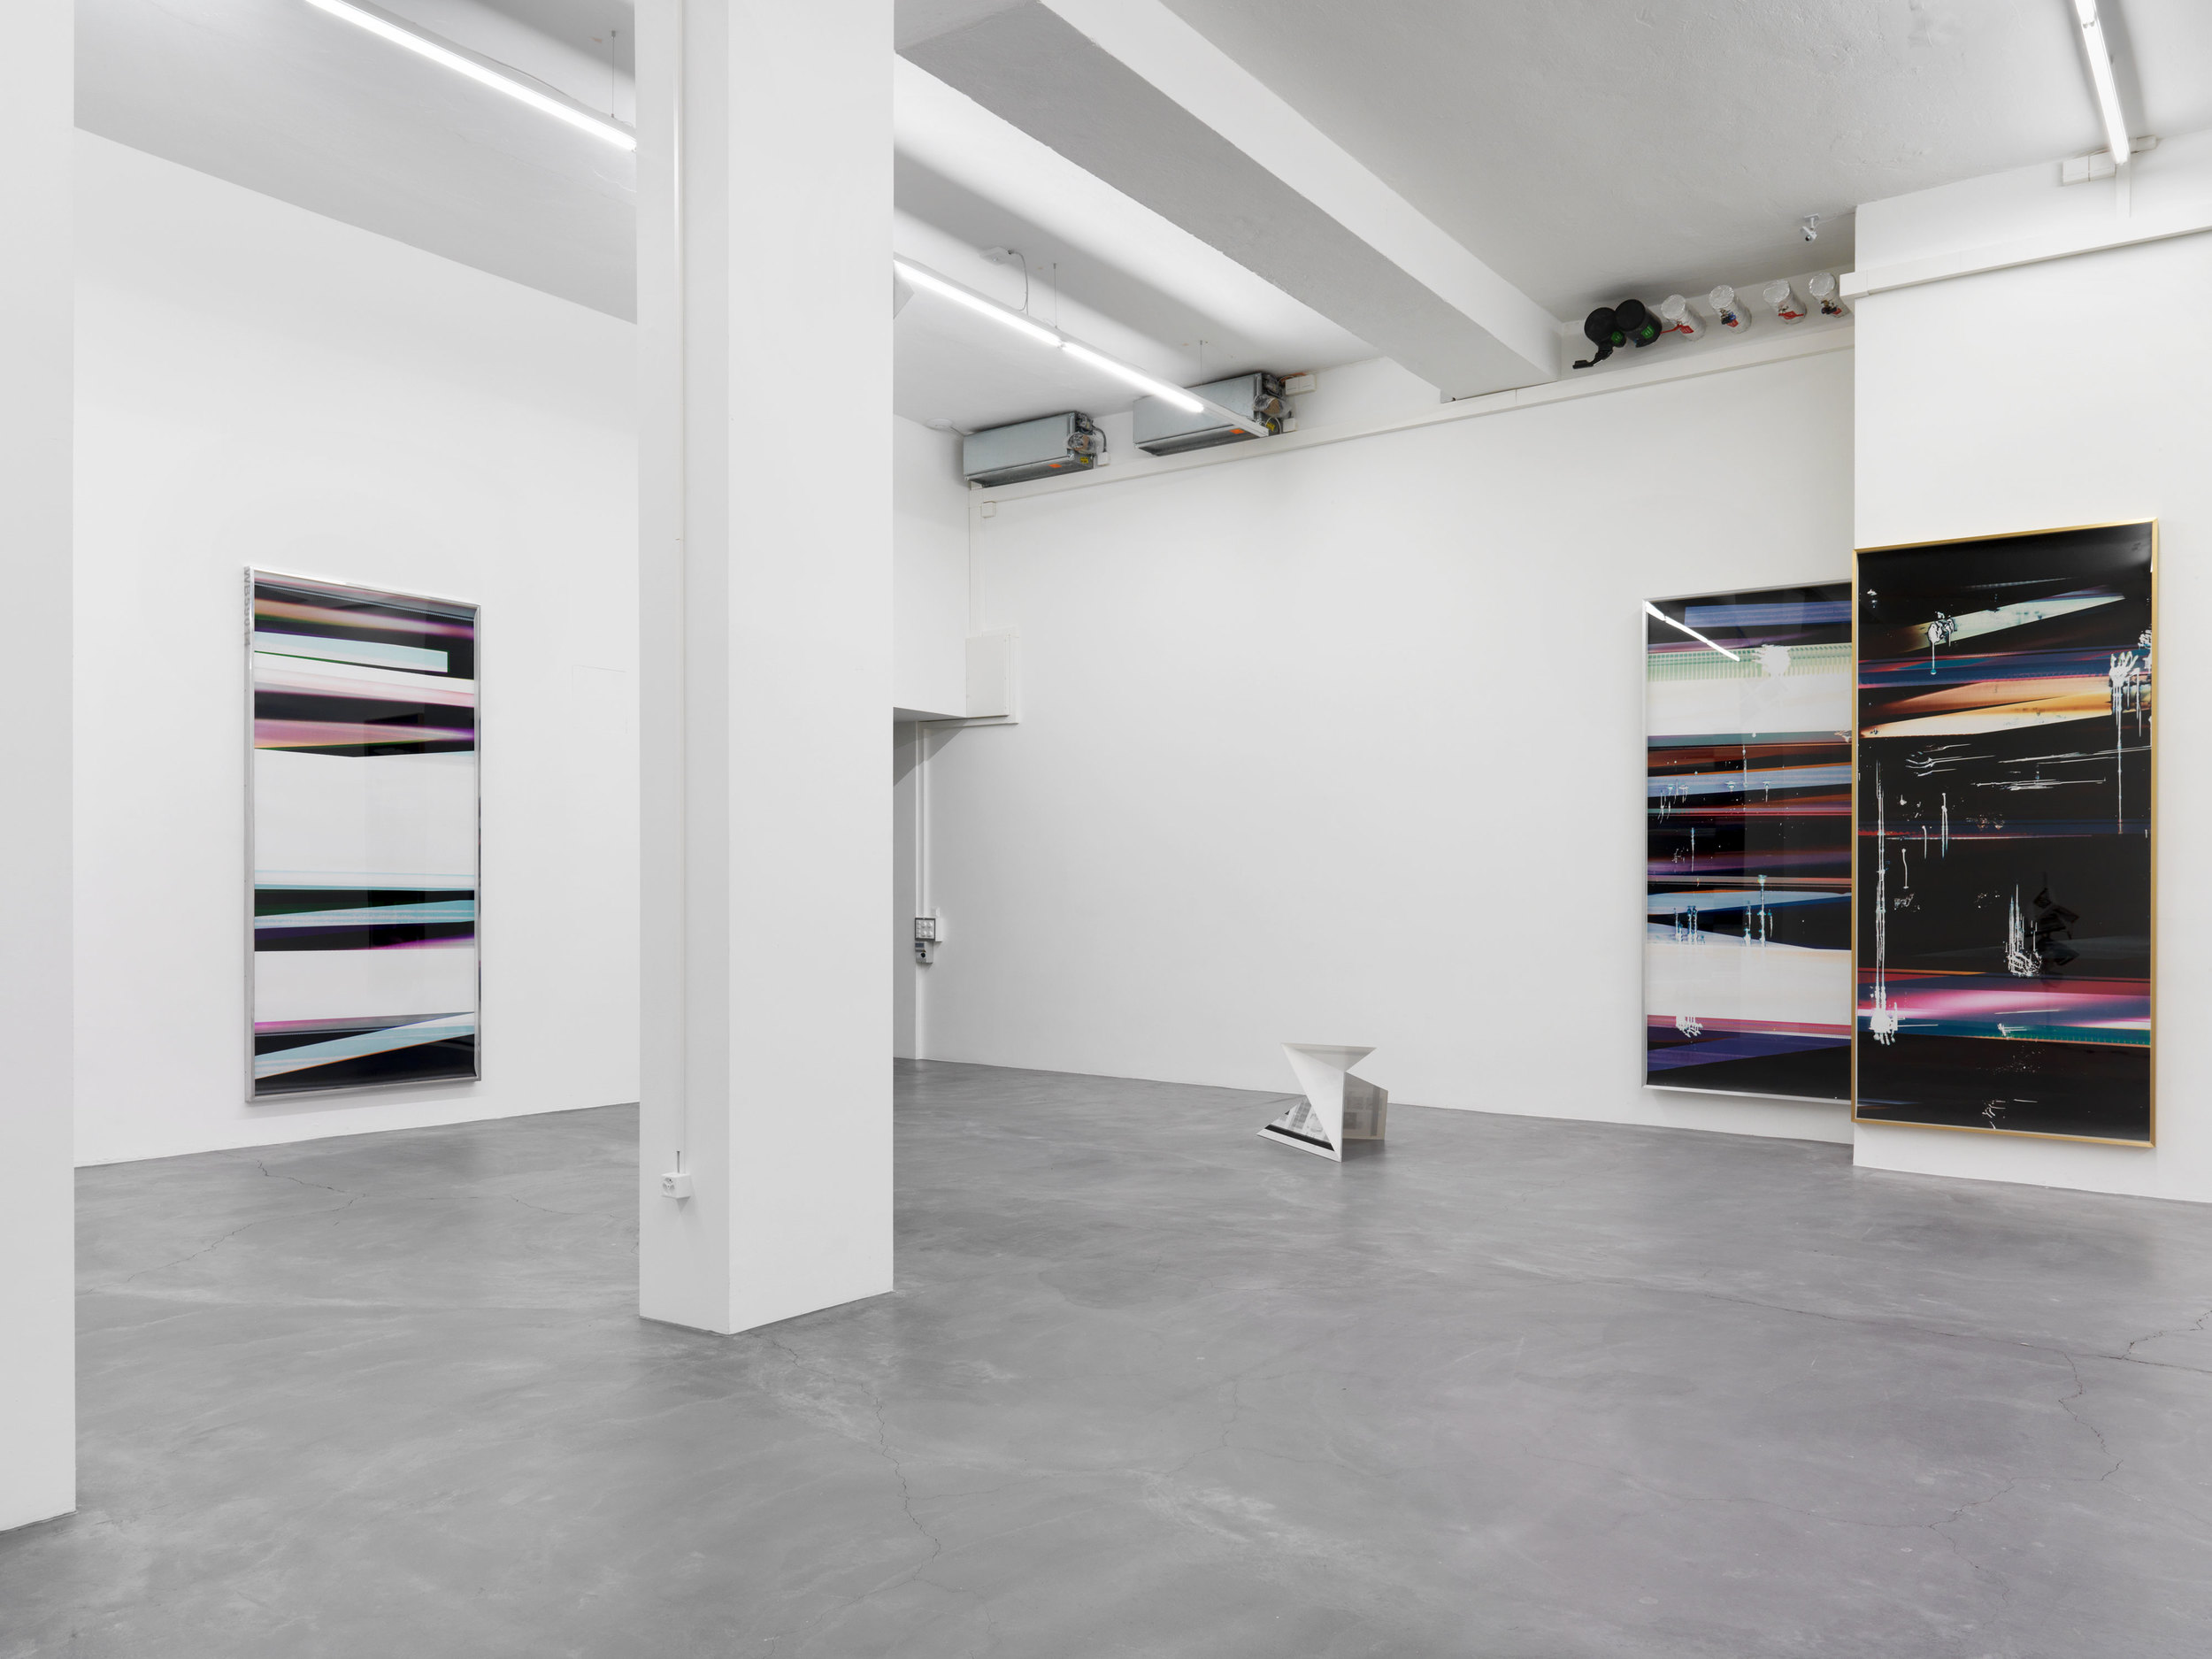   Automat   Galerie Eva Presenhuber, Zurich  2016 